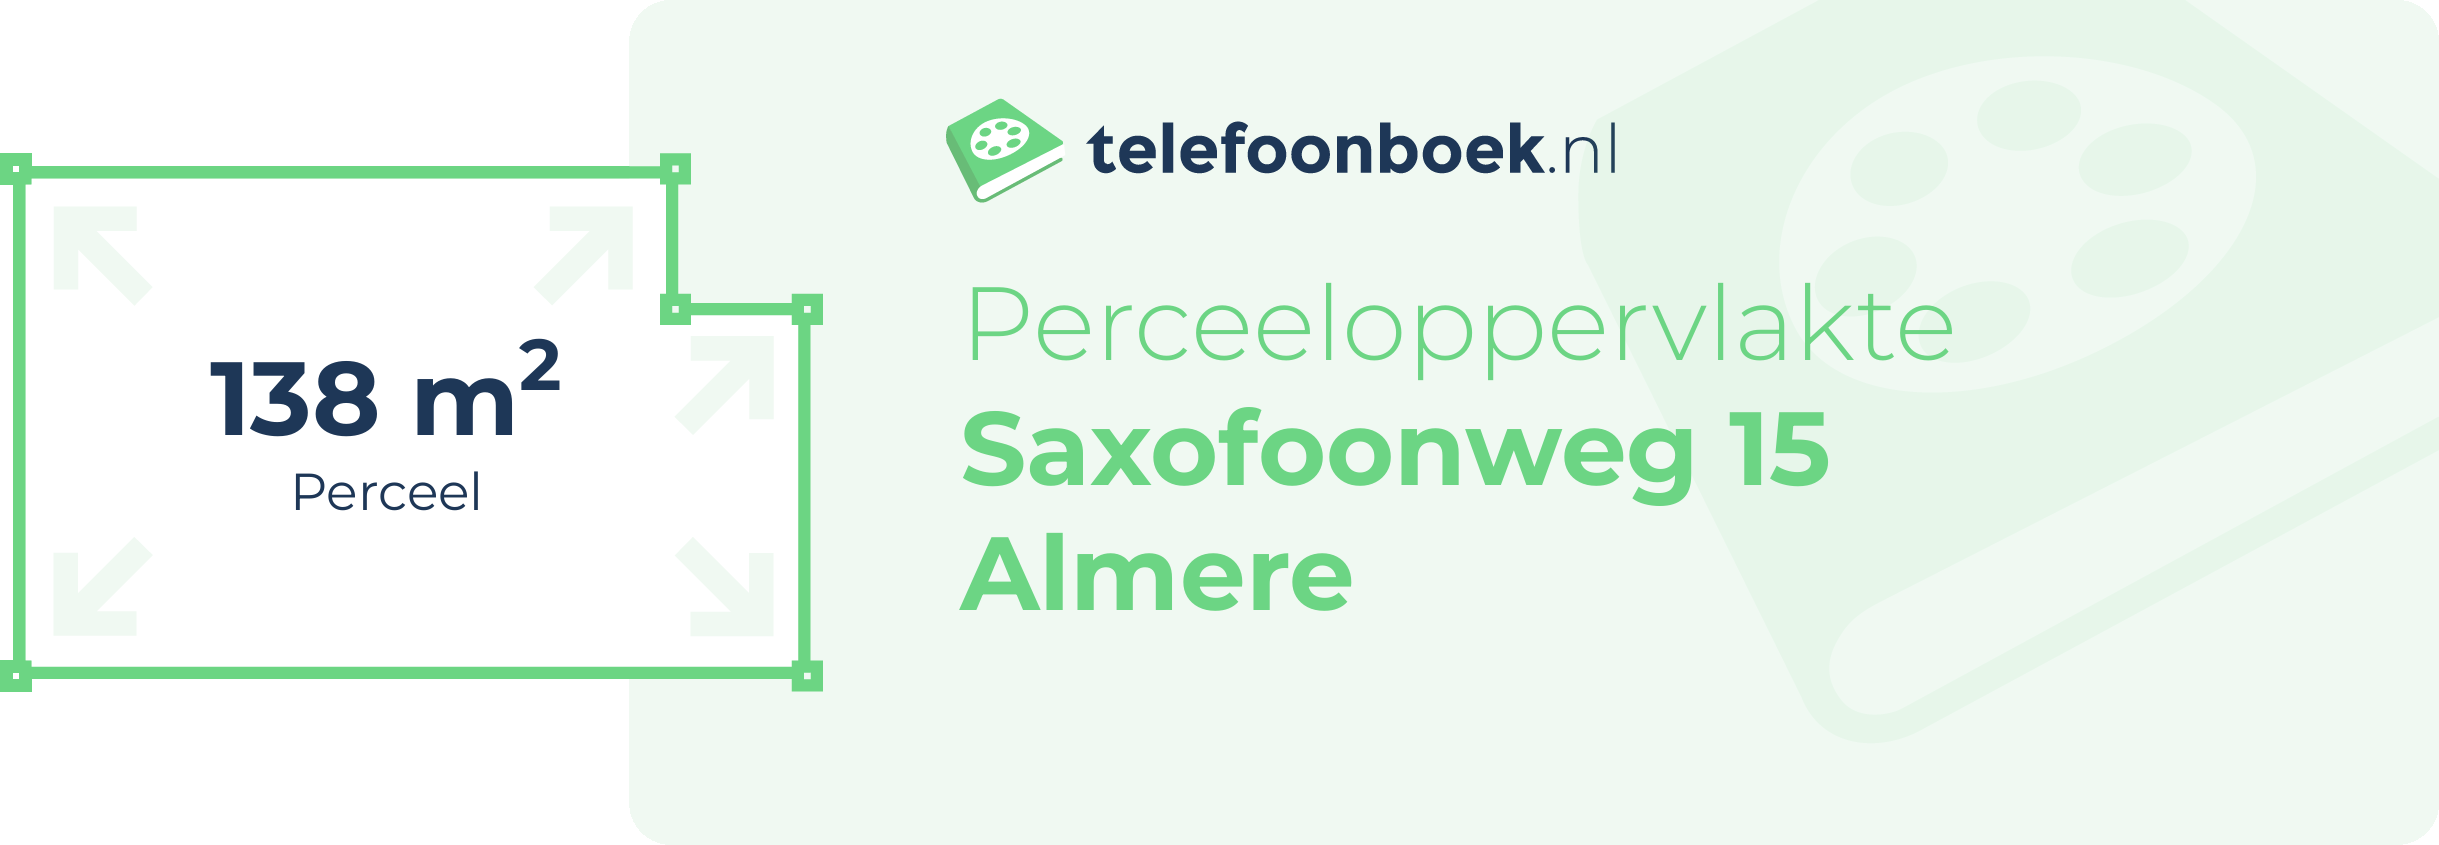 Perceeloppervlakte Saxofoonweg 15 Almere